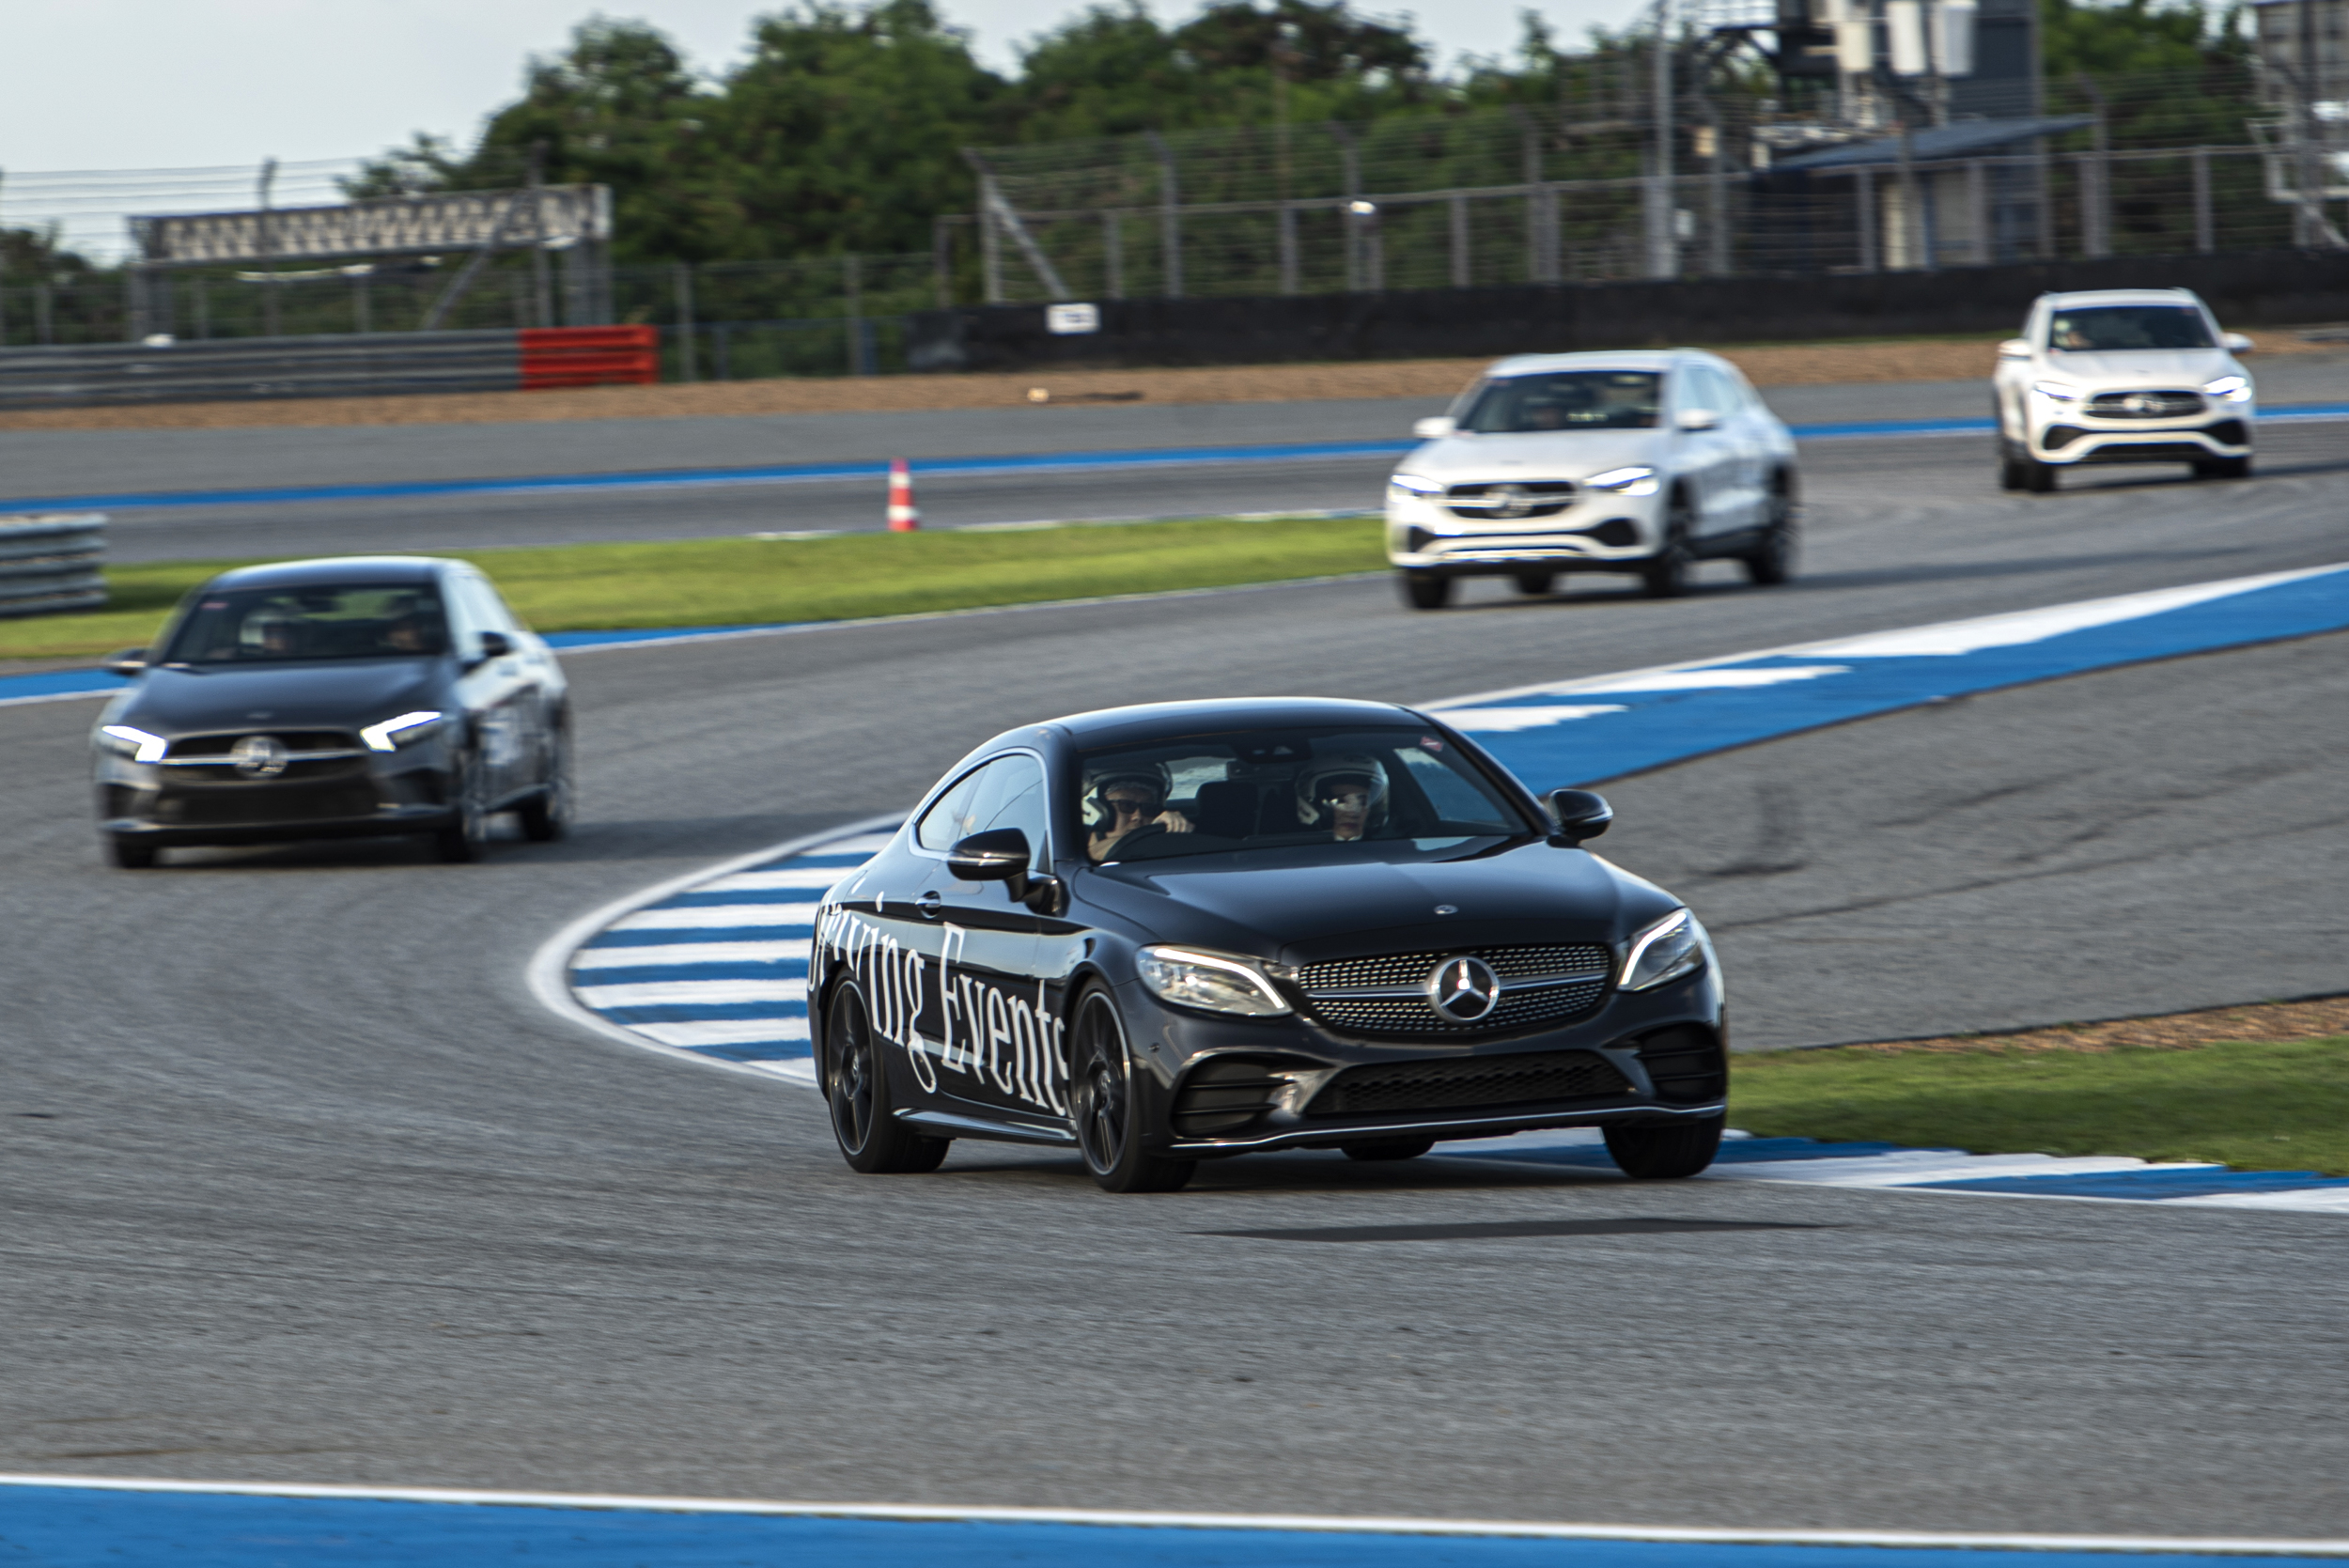 Mercedes-Benz Driving Events 2022